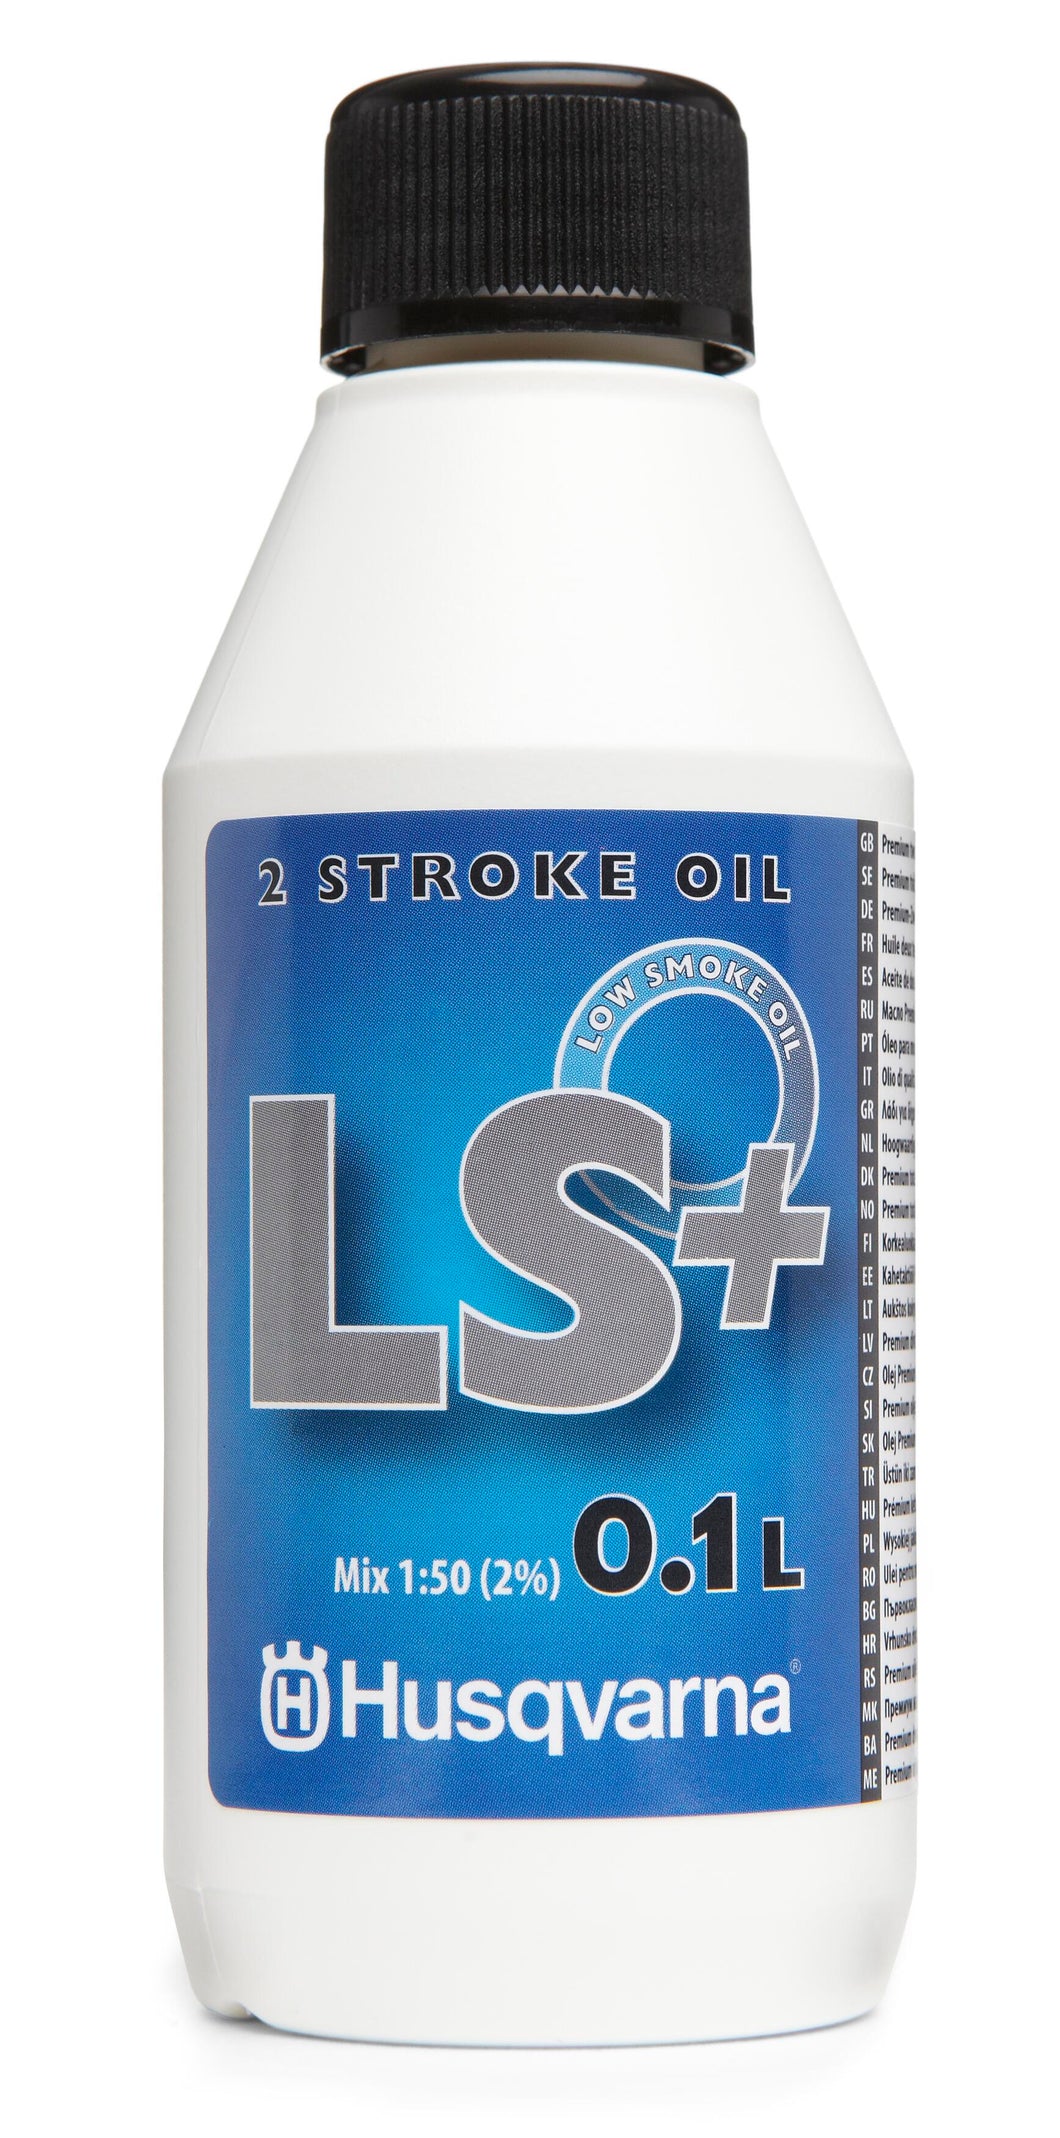 Husqvarna LS+ 2-Stroke Oil